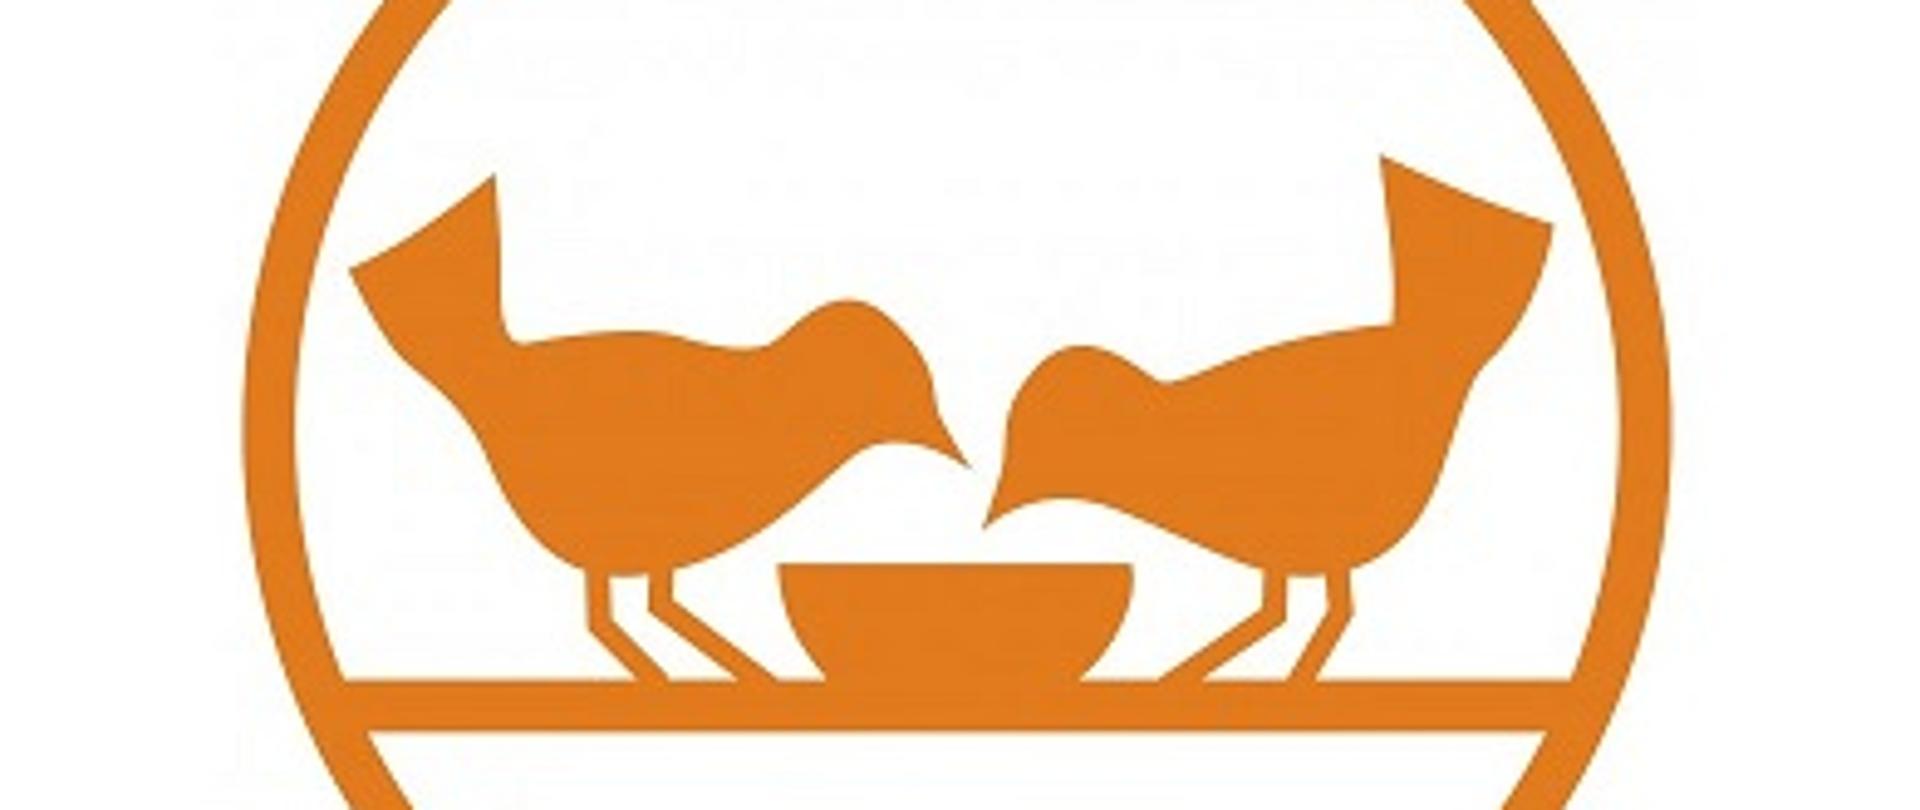 LOGO Banku Żywności, przedstawiające kontury dwóch ptaków w kolorze pochylonych nad miską otoczonych kołem. Ptaki i koło są w kolorze pomarańczowym na białym tle.